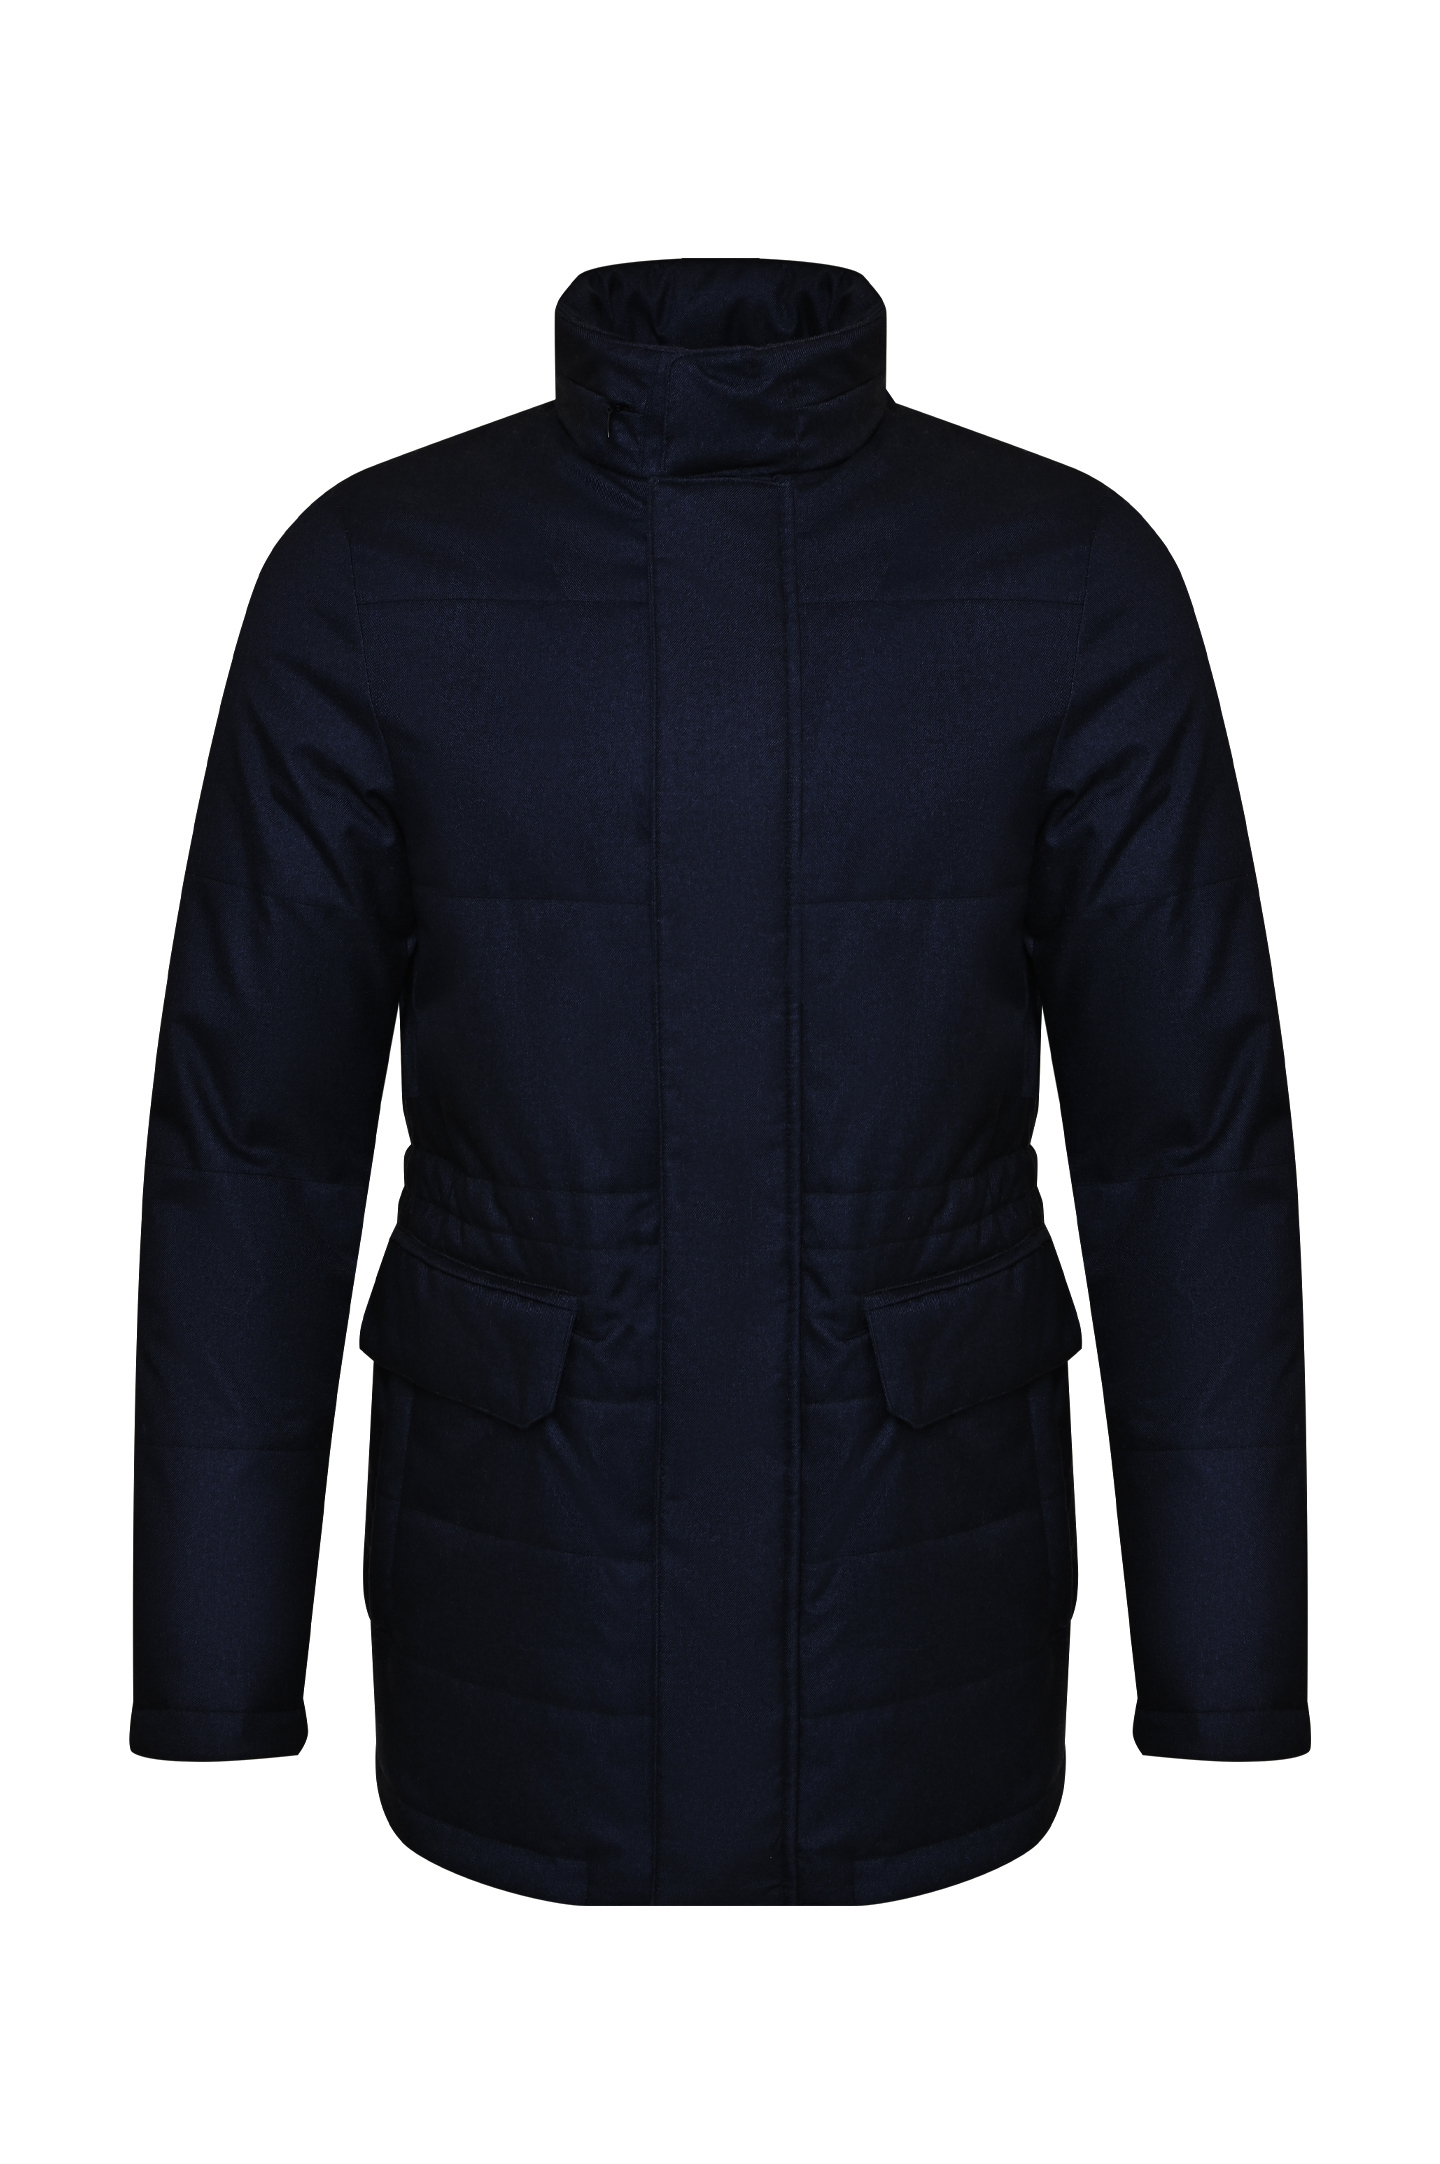 Куртка CANALI SG02732 O20353, цвет: Черный, Мужской